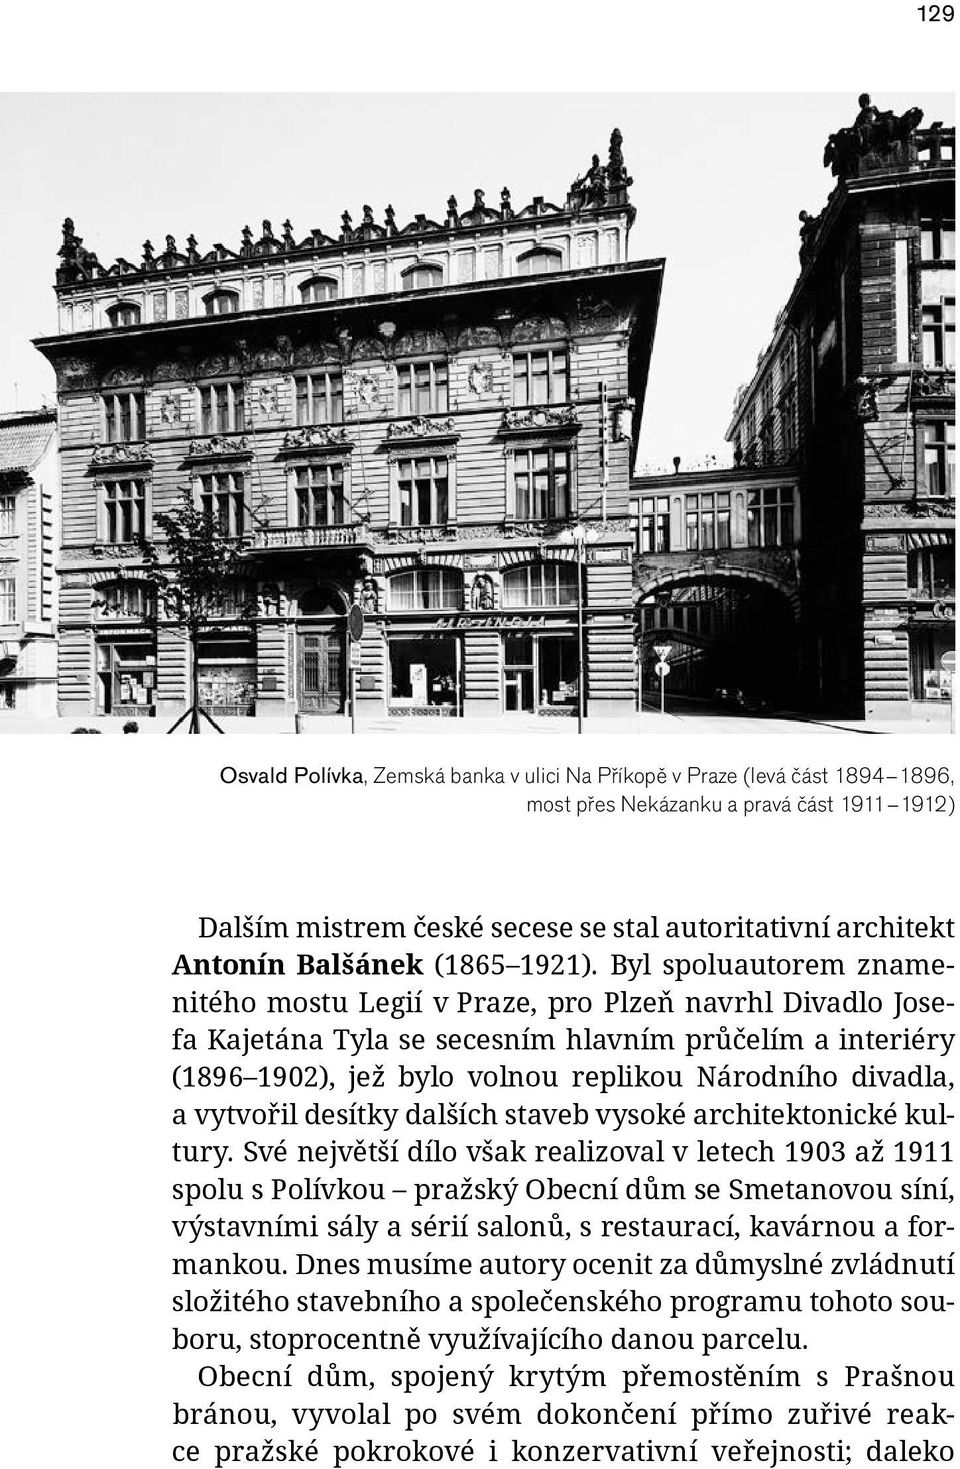 Byl spoluautorem znamenitého mostu Legií v Praze, pro Plzeň navrhl Divadlo Josefa Kajetána Tyla se secesním hlavním průčelím a interiéry (1896 1902), jež bylo volnou replikou Národního divadla, a